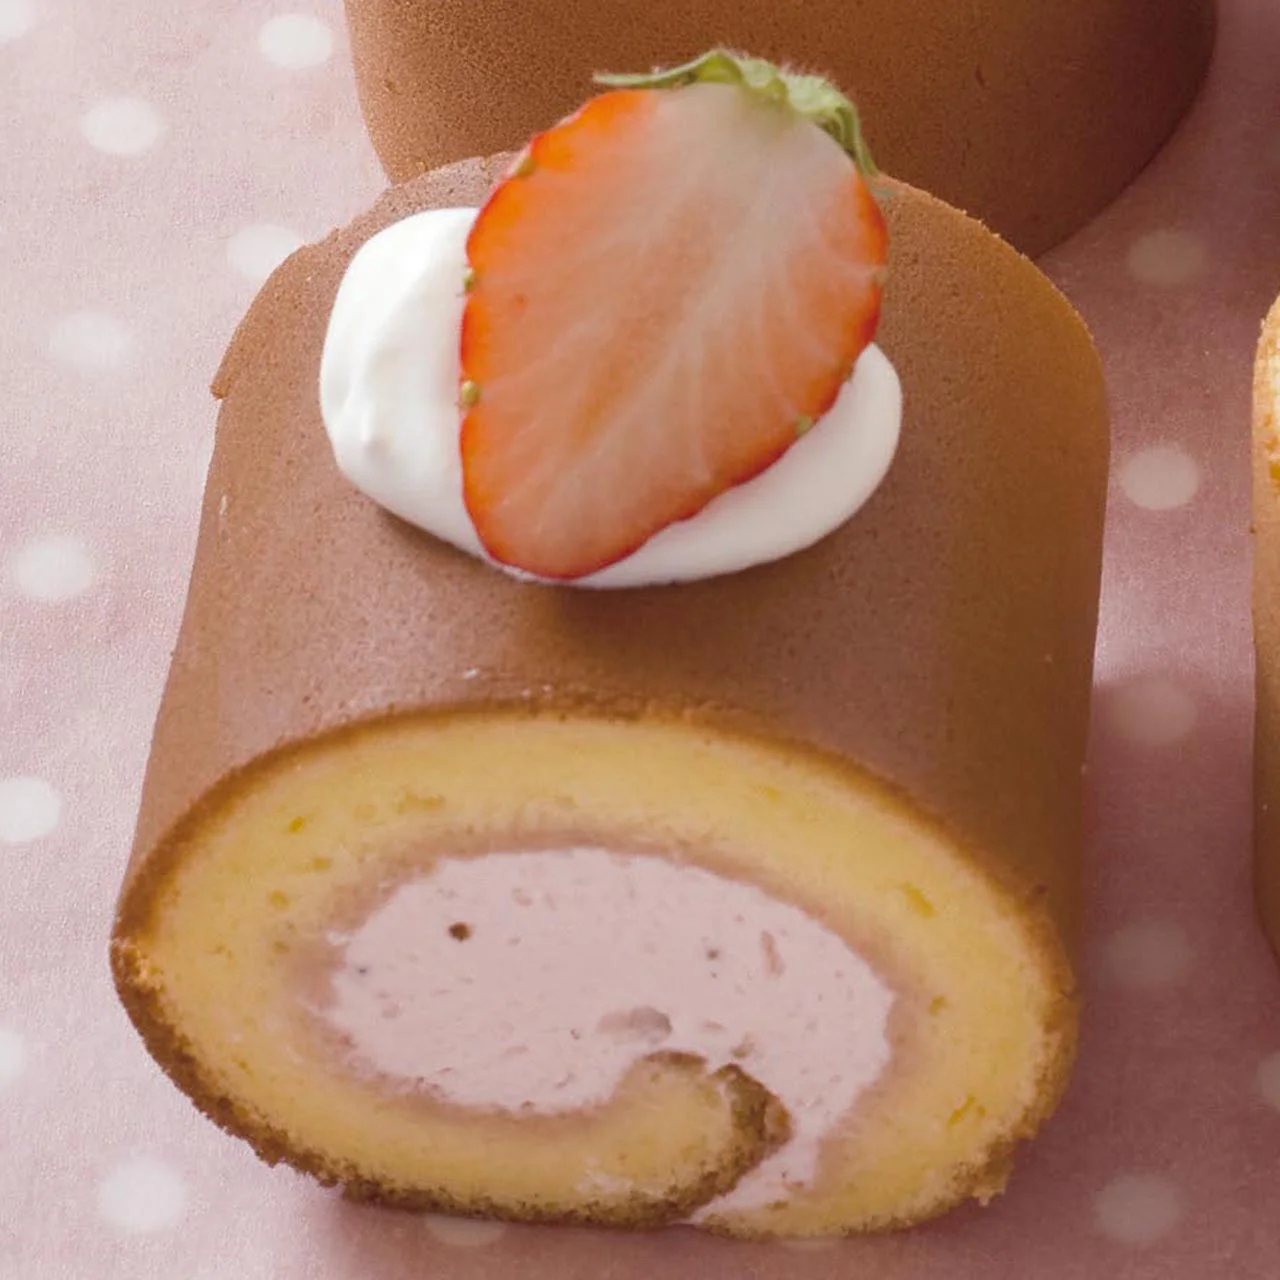 いちごクリームのプチロールケーキ By本間節子さんの料理レシピ プロのレシピならレタスクラブ